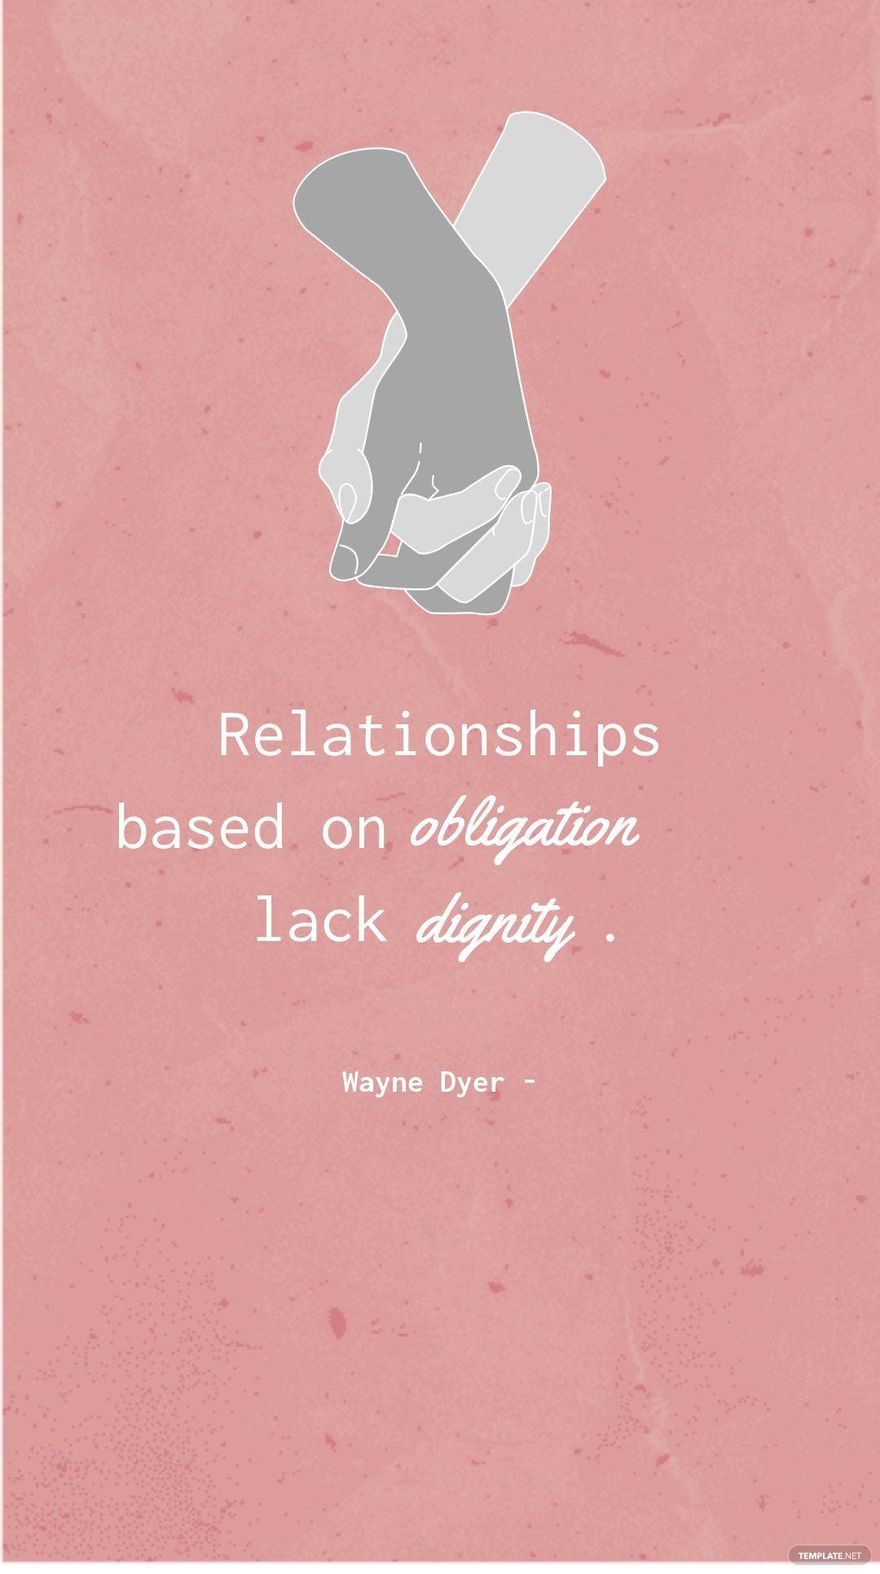 Wayne Dyer - Relationships based on obligation lack dignity.